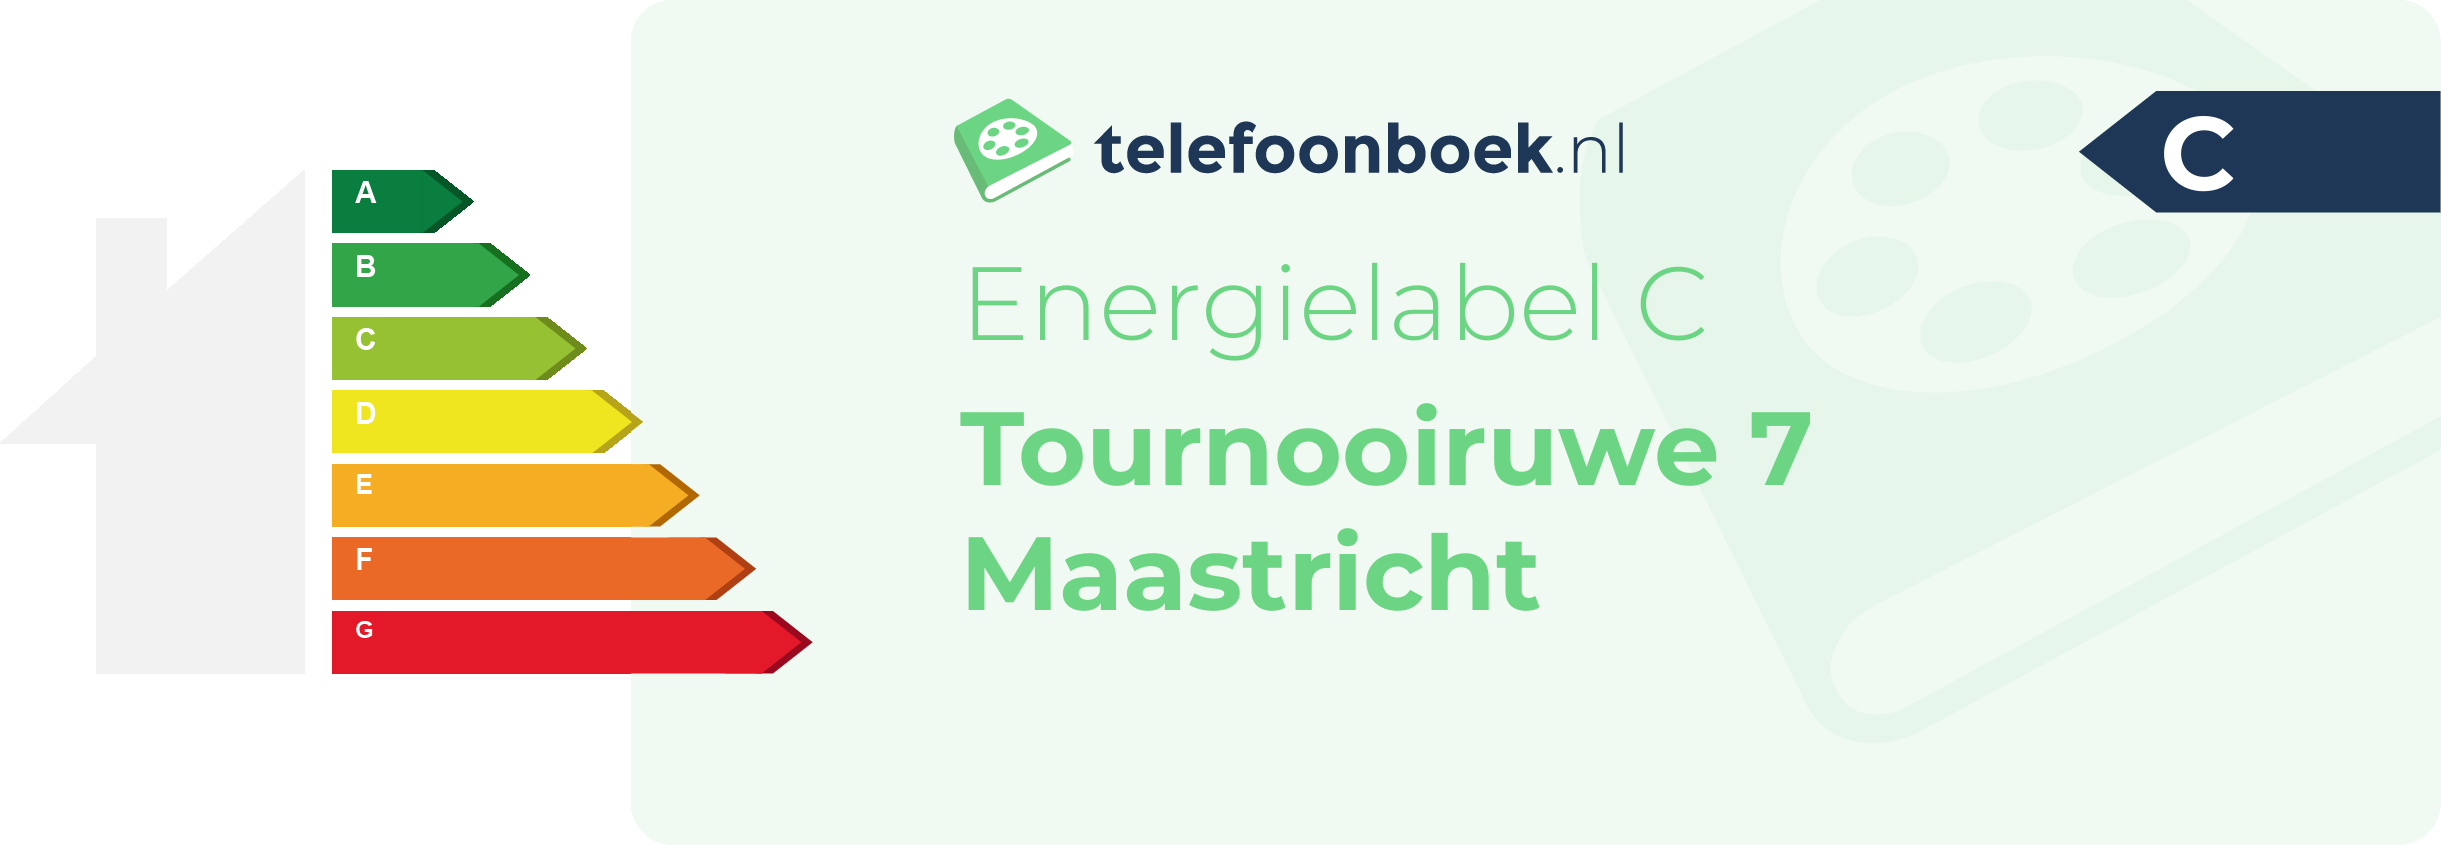 Energielabel Tournooiruwe 7 Maastricht